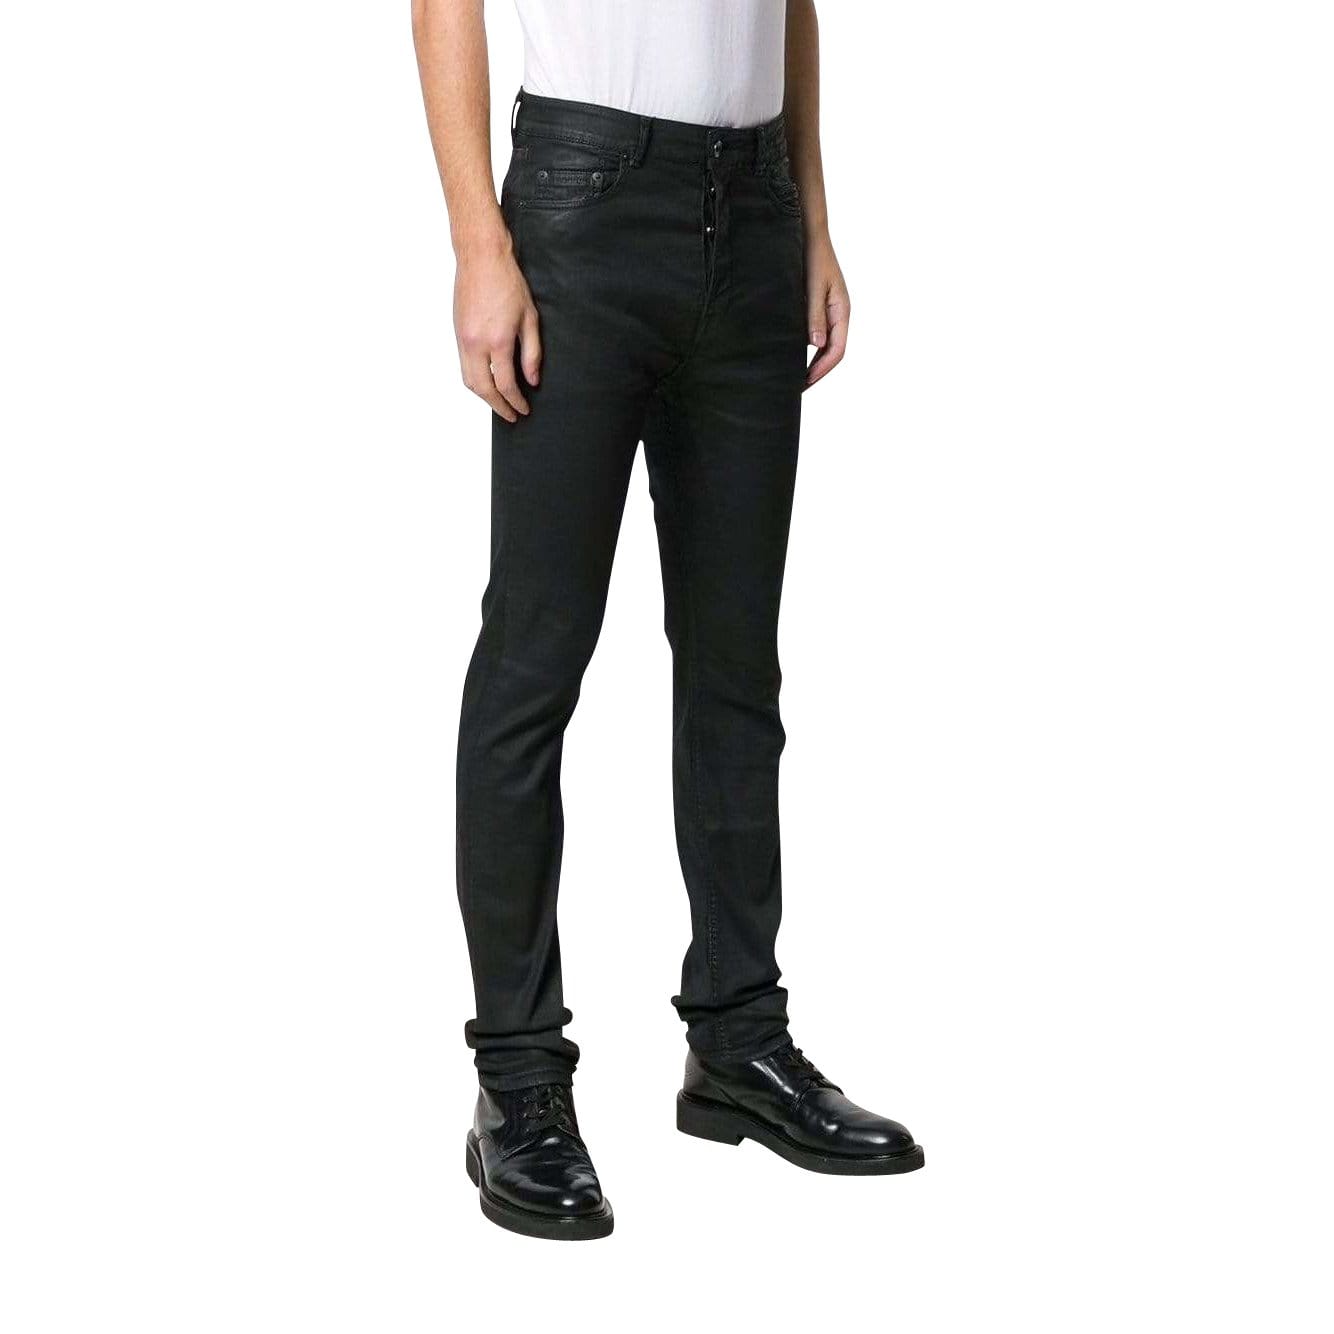 berlin-cut-pants Mens Pants Black